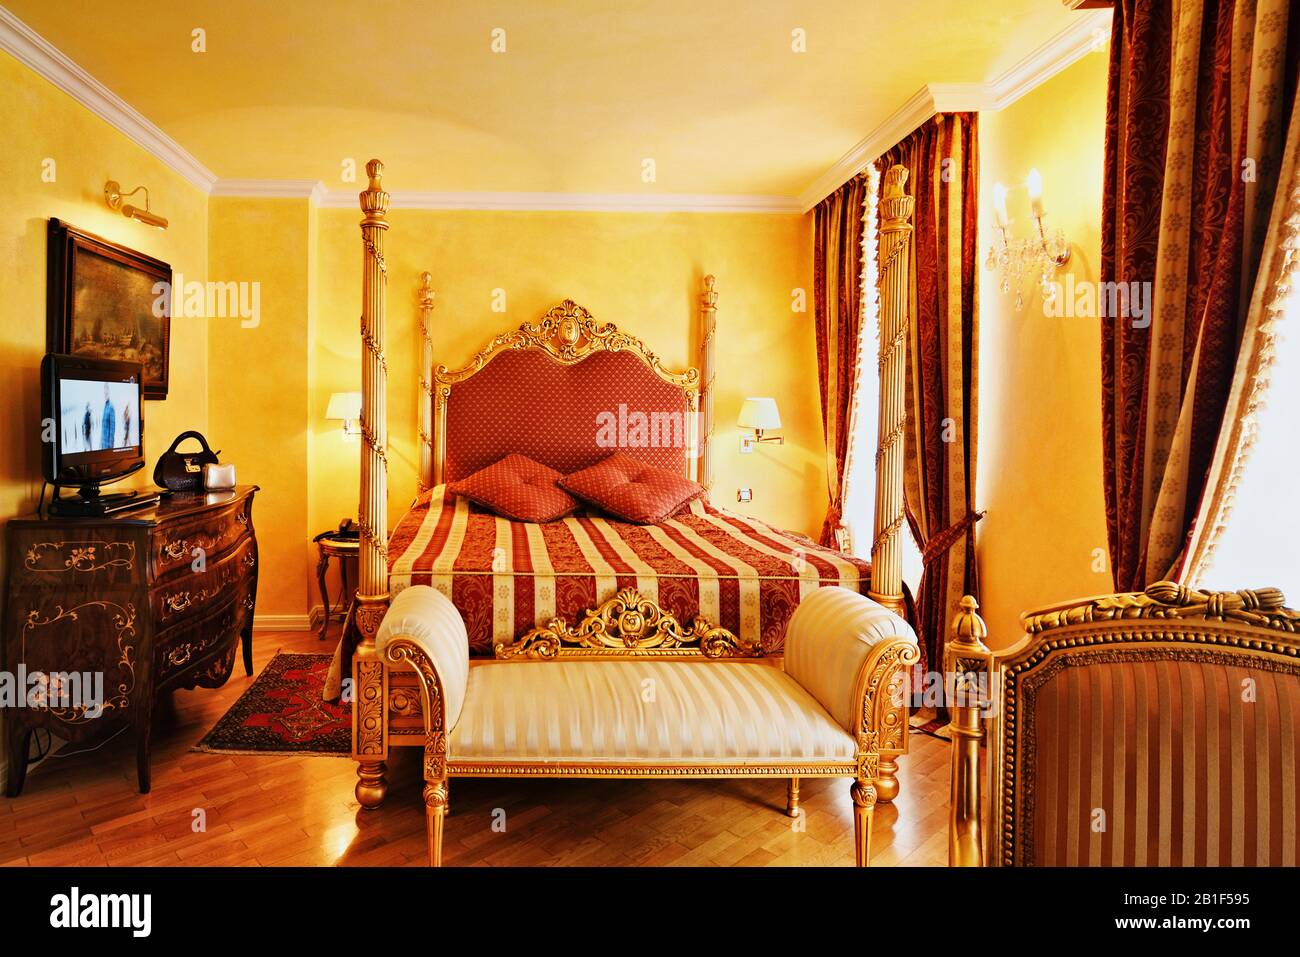 Le luxe baroque des meubles dorés et des tissus de brocart rouges et dorés décorent un intérieur luxuriant et une chambre d'hôtel à l'allure royale à Prague Banque D'Images